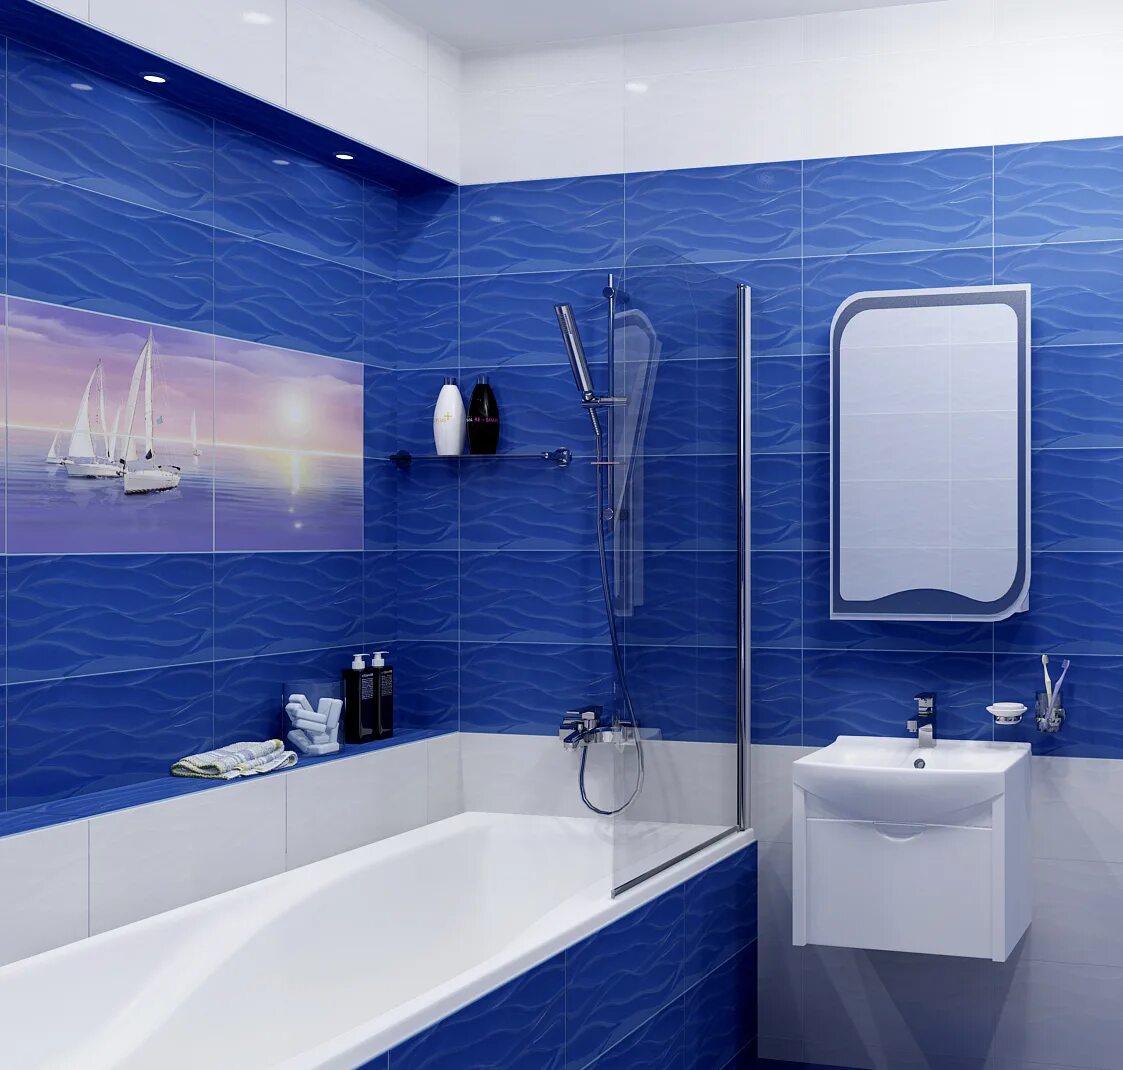 Ванна пвх панели отзывы. Синяя ванная комната. Ванная в синем цвете. Плитка для ванной комнаты синяя. Плитка в ванную синяя.